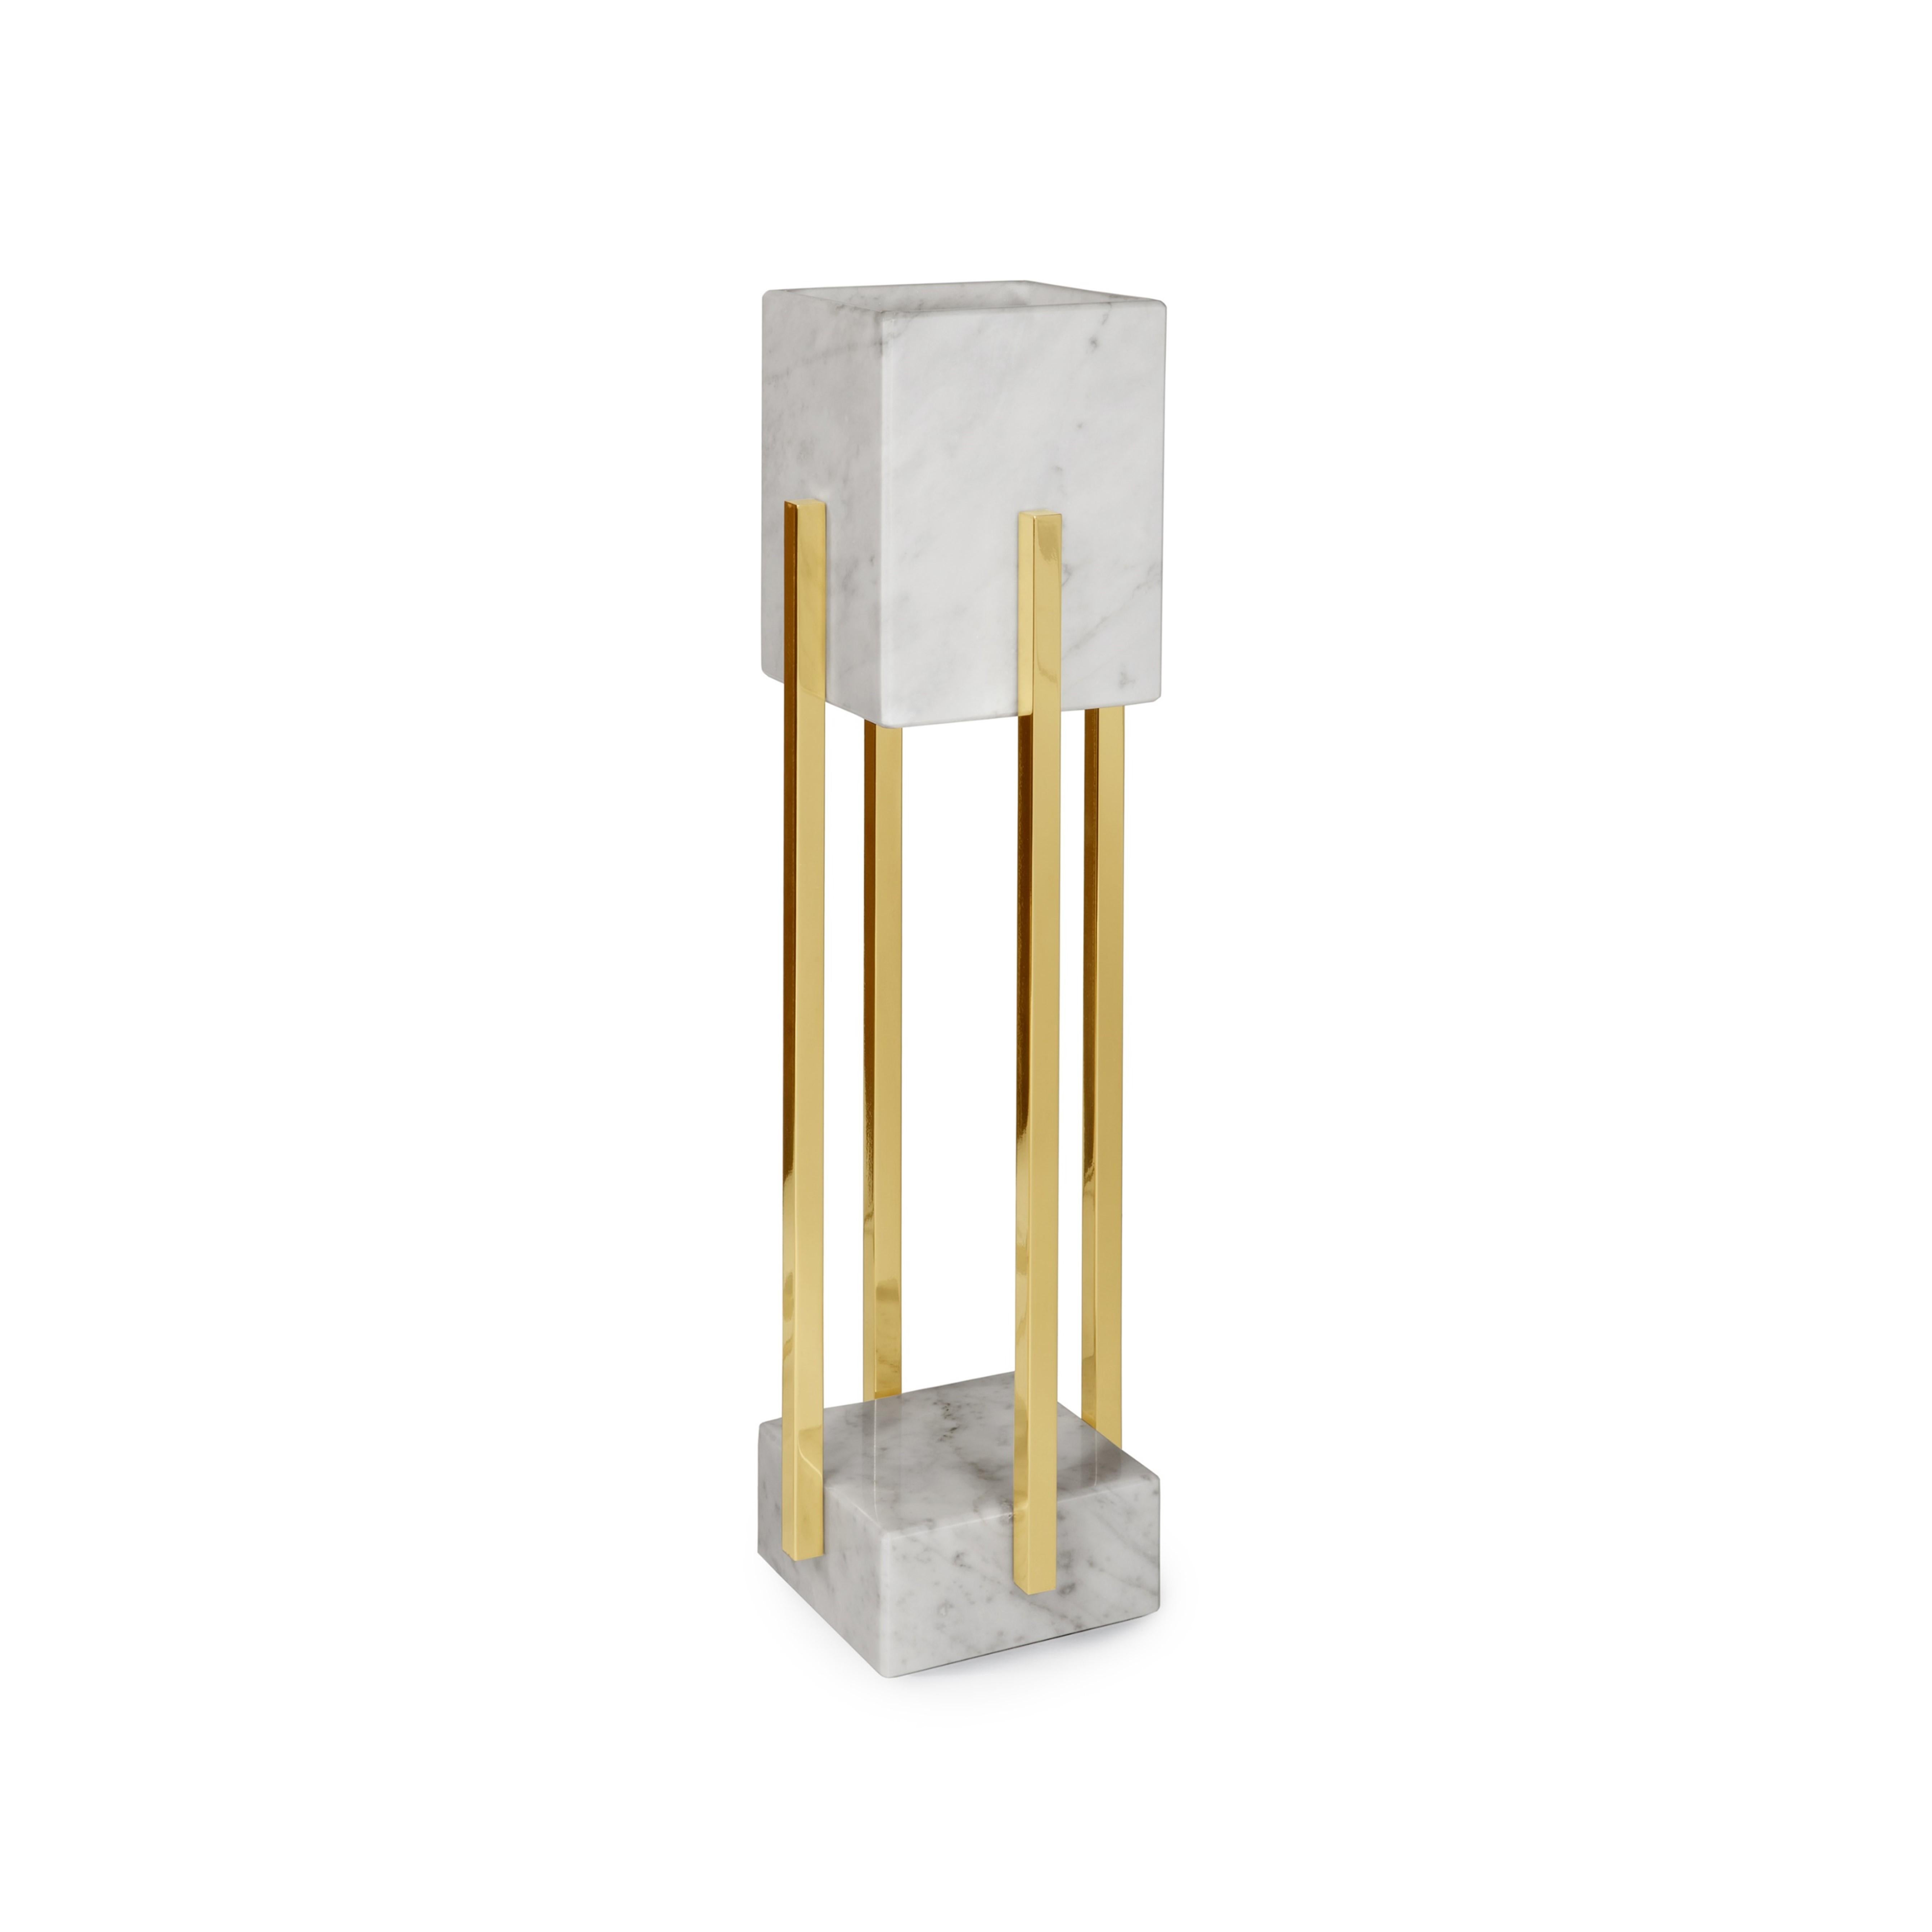 La lampe de table Looshaus est un design contemporain qui interprète l'austérité moderniste du bâtiment Looshaus de l'architecte Adolf Loos.
Le bâtiment Looshaus à Vienne a marqué un tournant dans l'architecture par son rejet de l'historicisme et